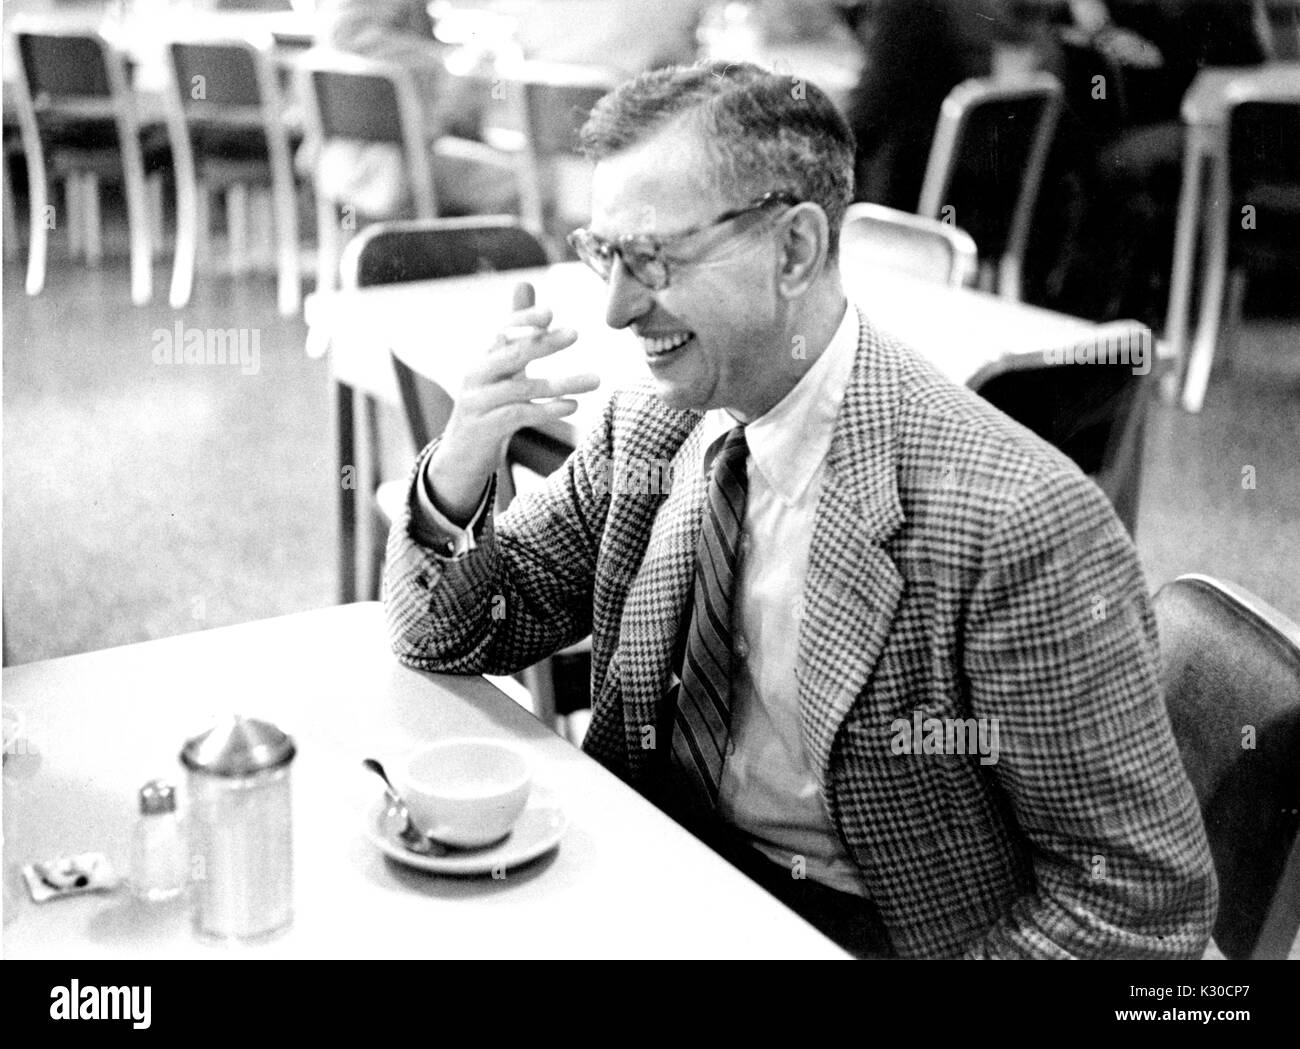 Blazer tweed portant des lunettes et de tortue, Thomas Cook de l'Ira, professeur de philosophie politique à l'Université Johns Hopkins, est assis à une table d'un diner tenant sa main jusqu'à son visage en riant, une tasse de café vide en face de lui, Baltimore, Maryland, 1956. Banque D'Images